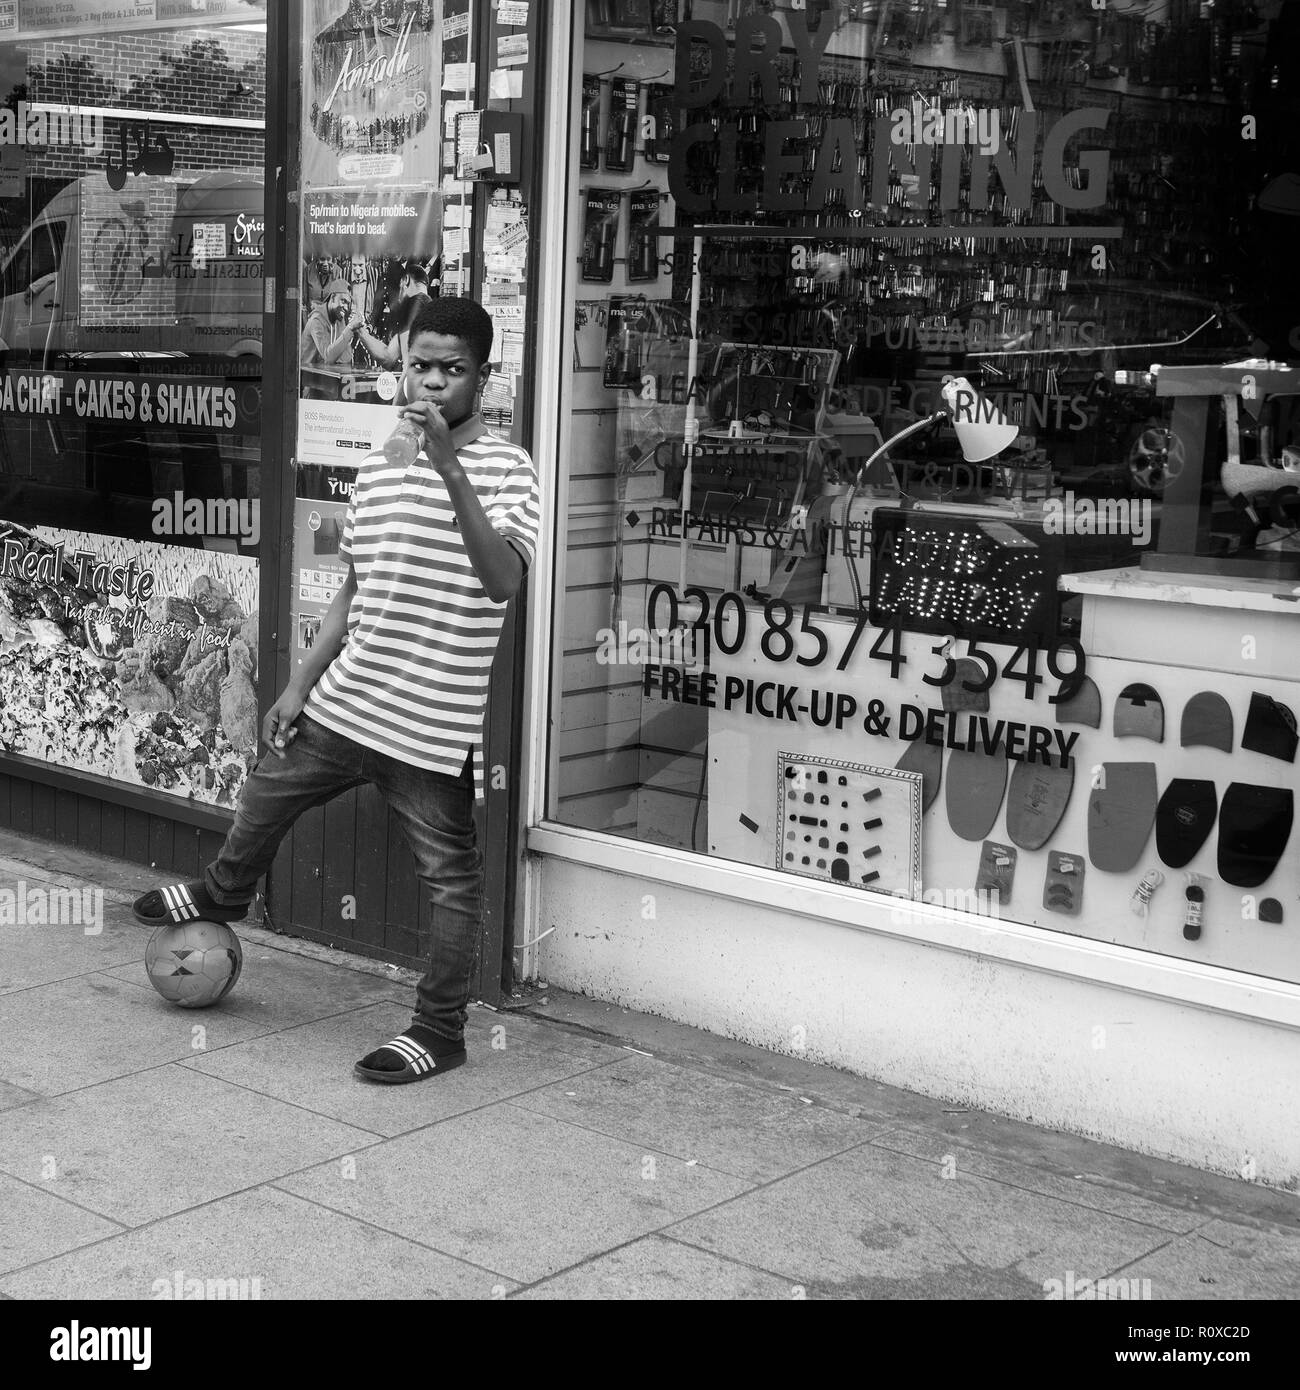 Junge mit Fußball unter seinem Fuß, Getränk in der Hand, draußen auf der Straße eine chemische Reinigung Shop, Southwark broadway London UK Stockfoto